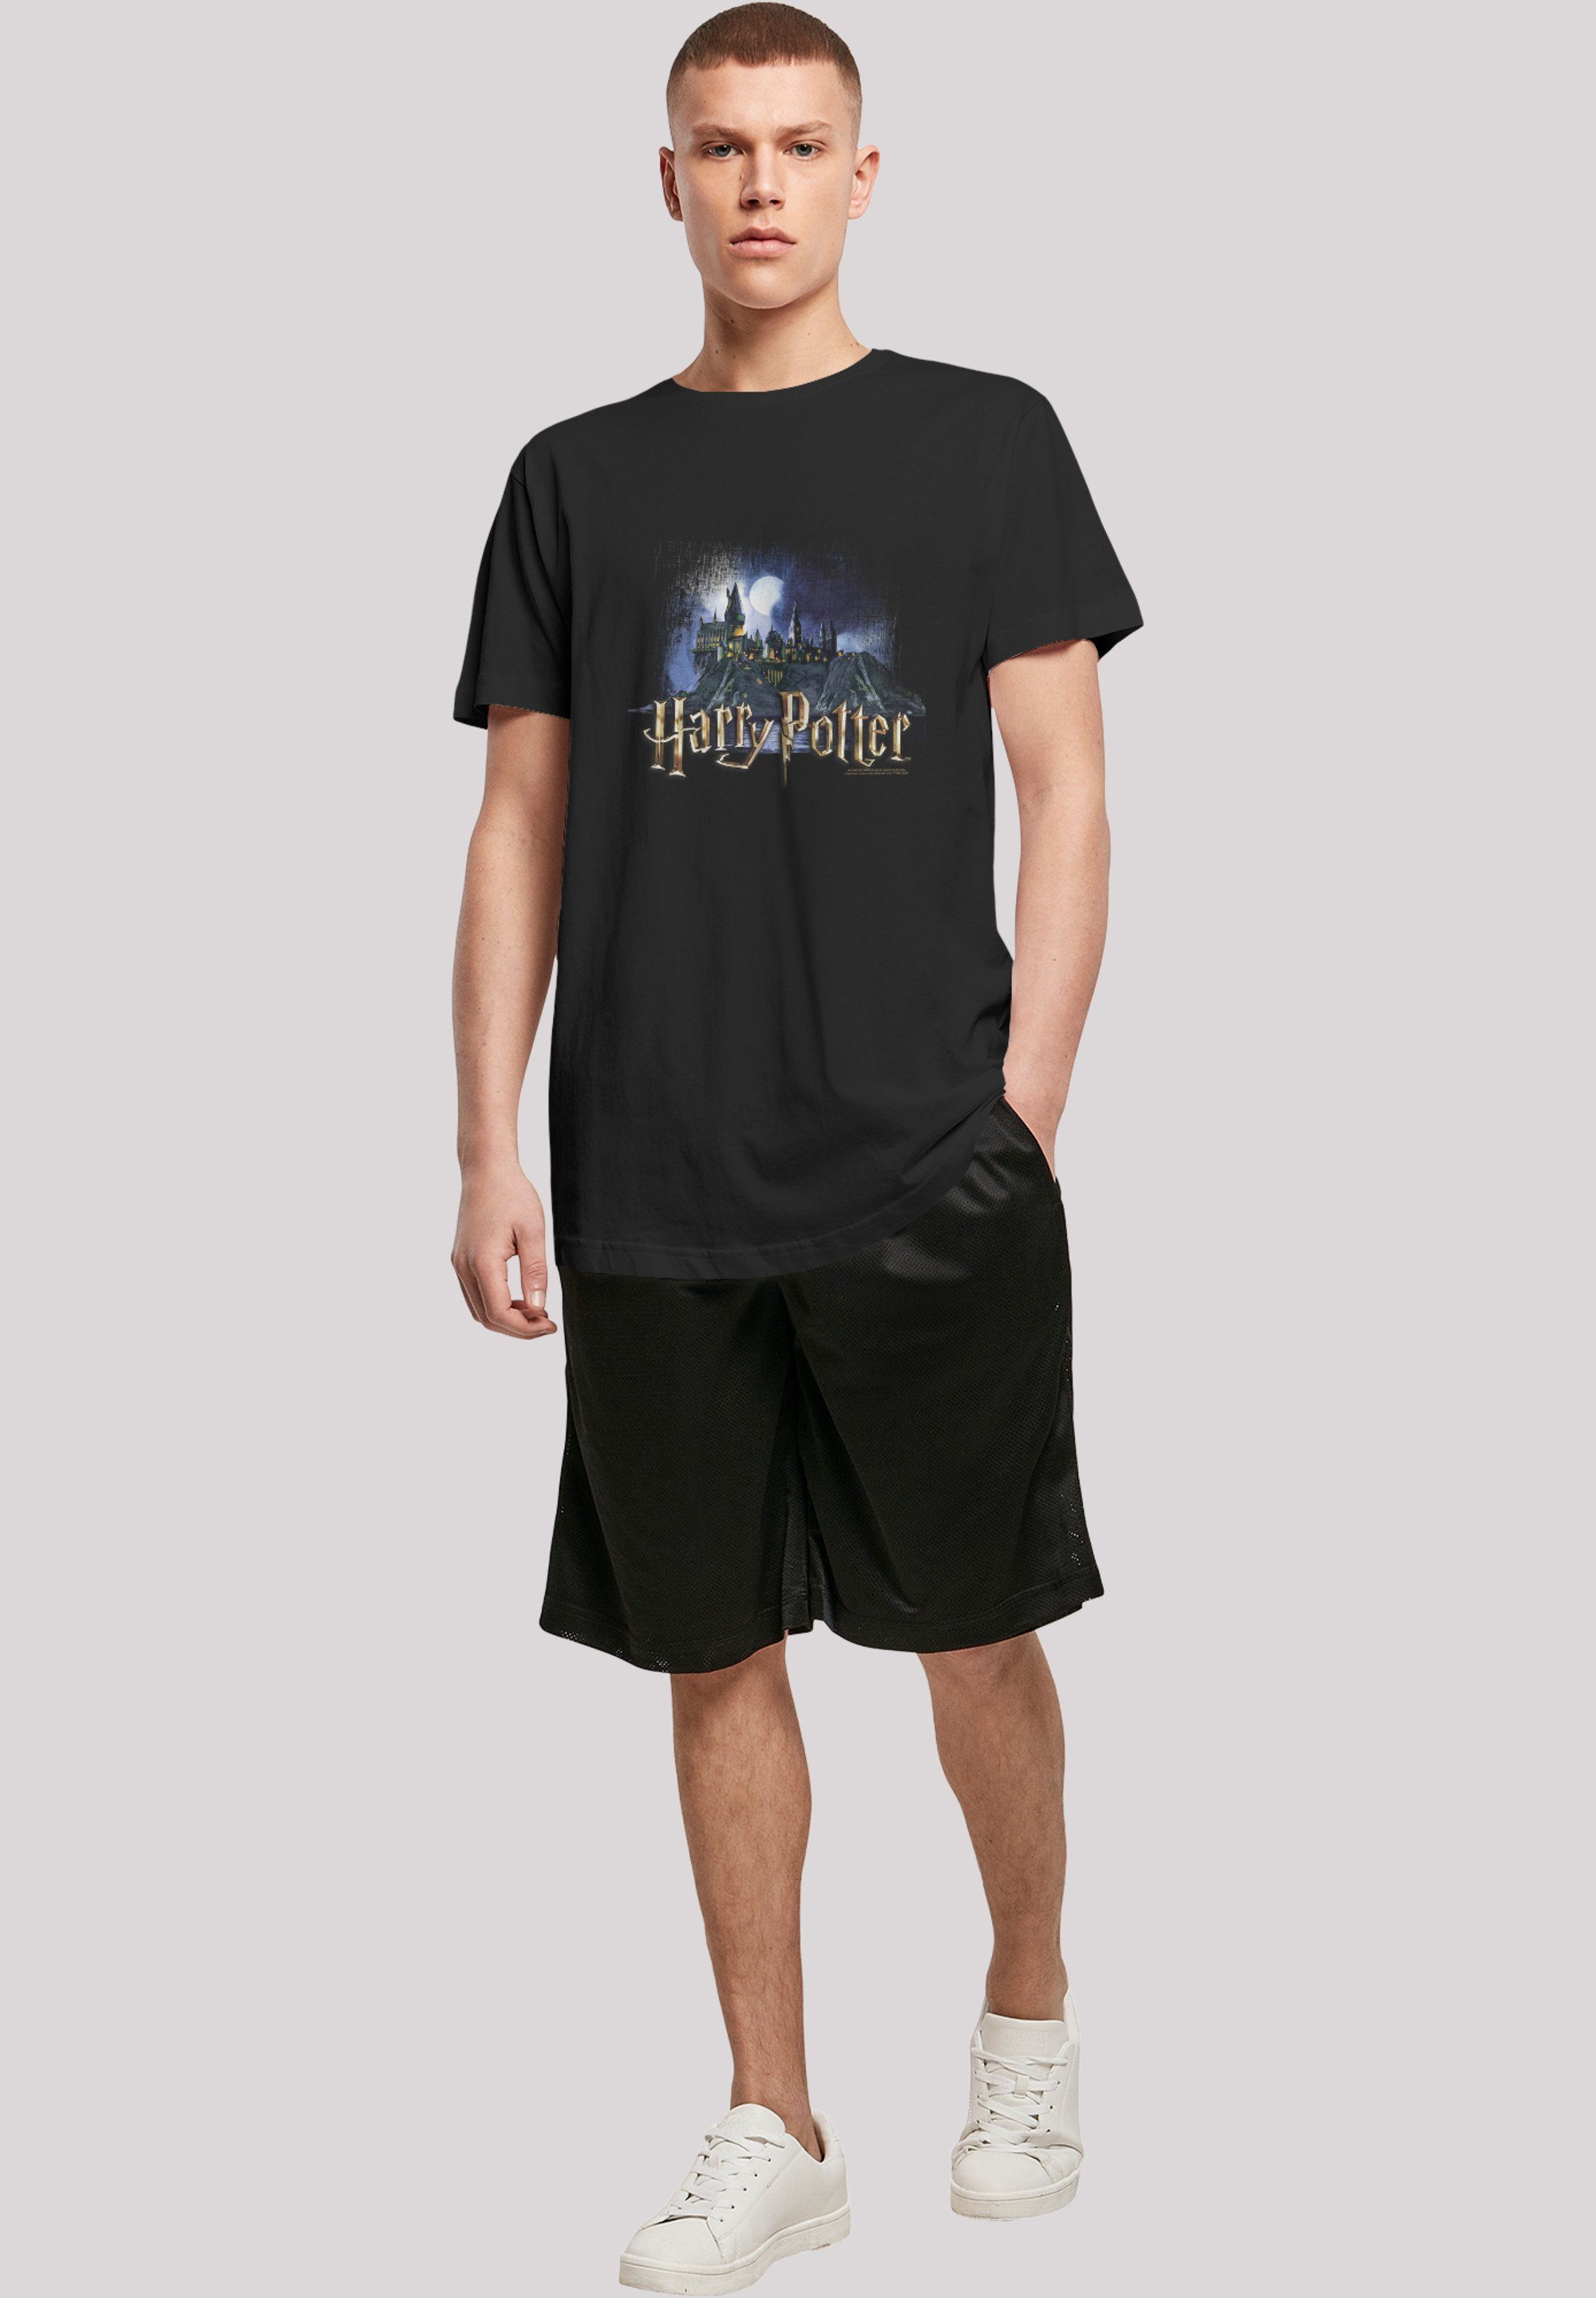 für F4NT4STIC Castle Potter Zauberei und Hogwarts Hexerei Harry Print T-Shirt Schule